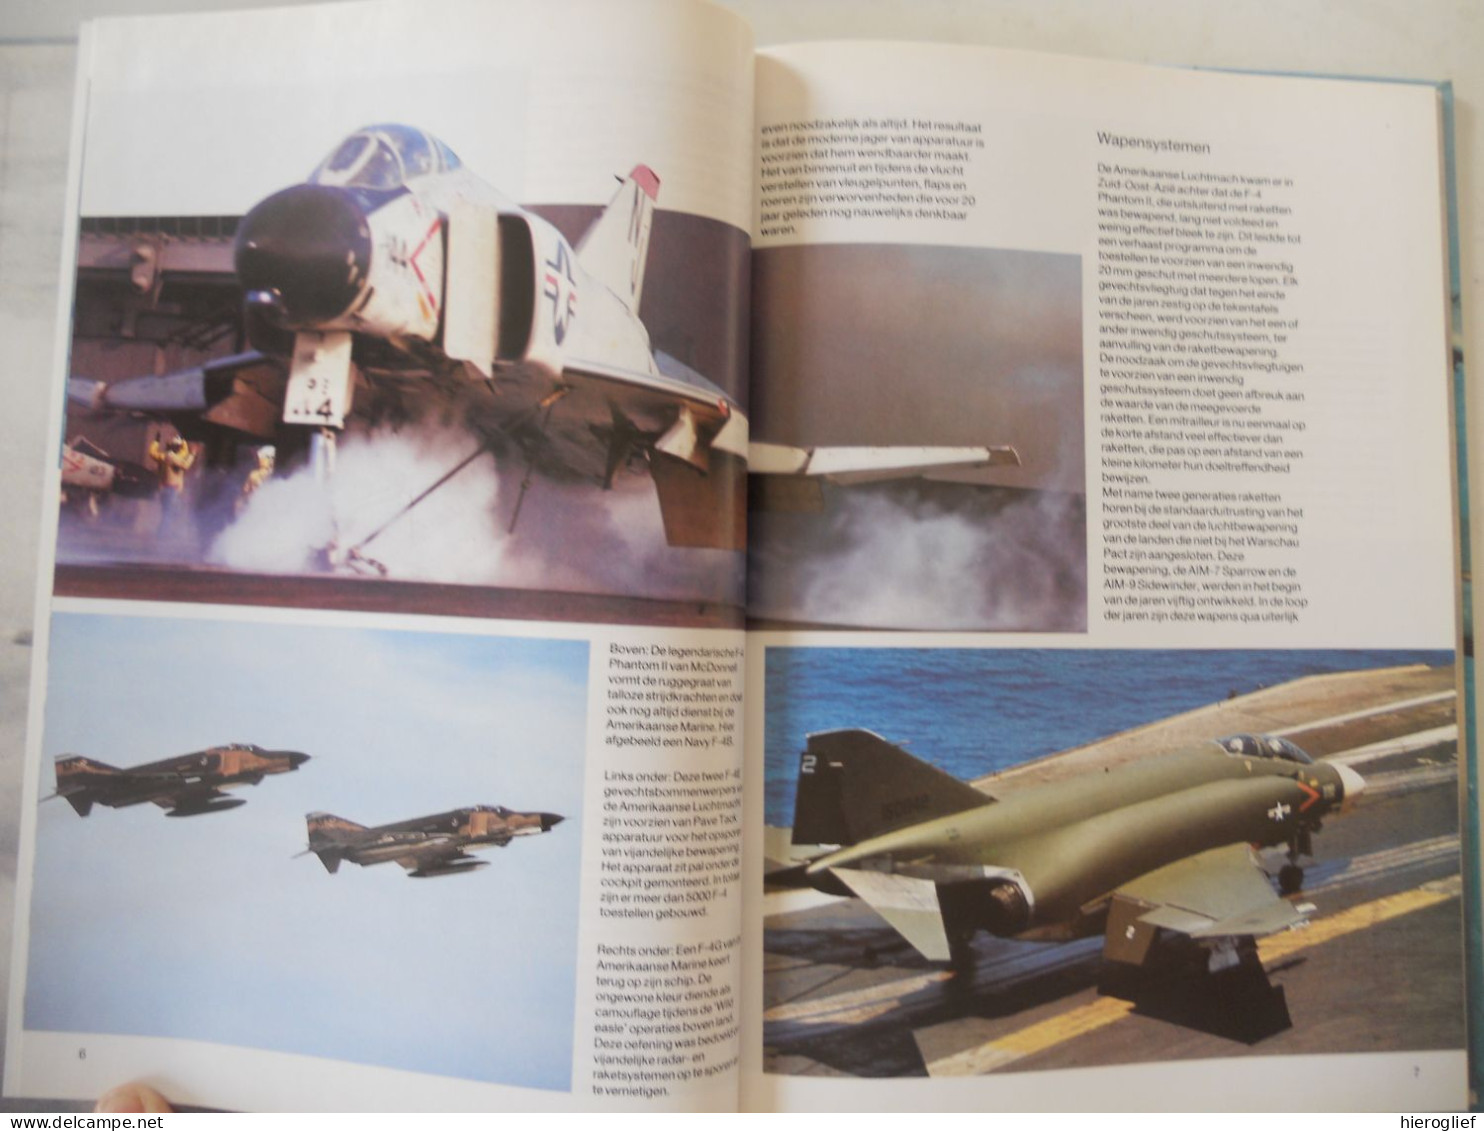 GEVECHTSVLIEGTUIGEN Door Hugh W. Cowin / Oorlog Vliegtuigen Luchtmacht Types Modellen Afweer Bommenwerpers - Geschiedenis